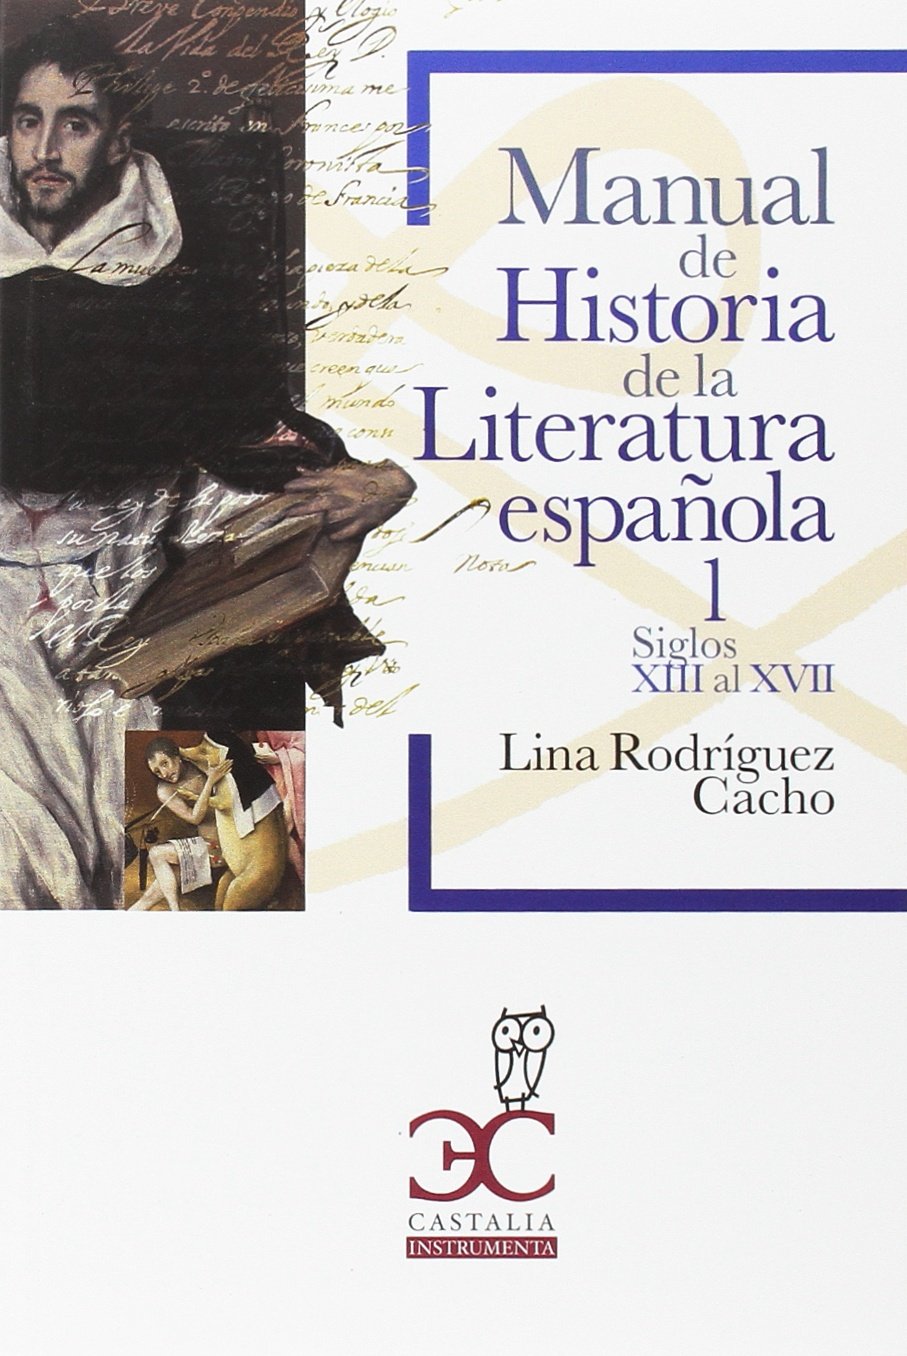 Imagen de portada del libro Manual de historia de la literatura española. 1, Siglos XIII al XVII